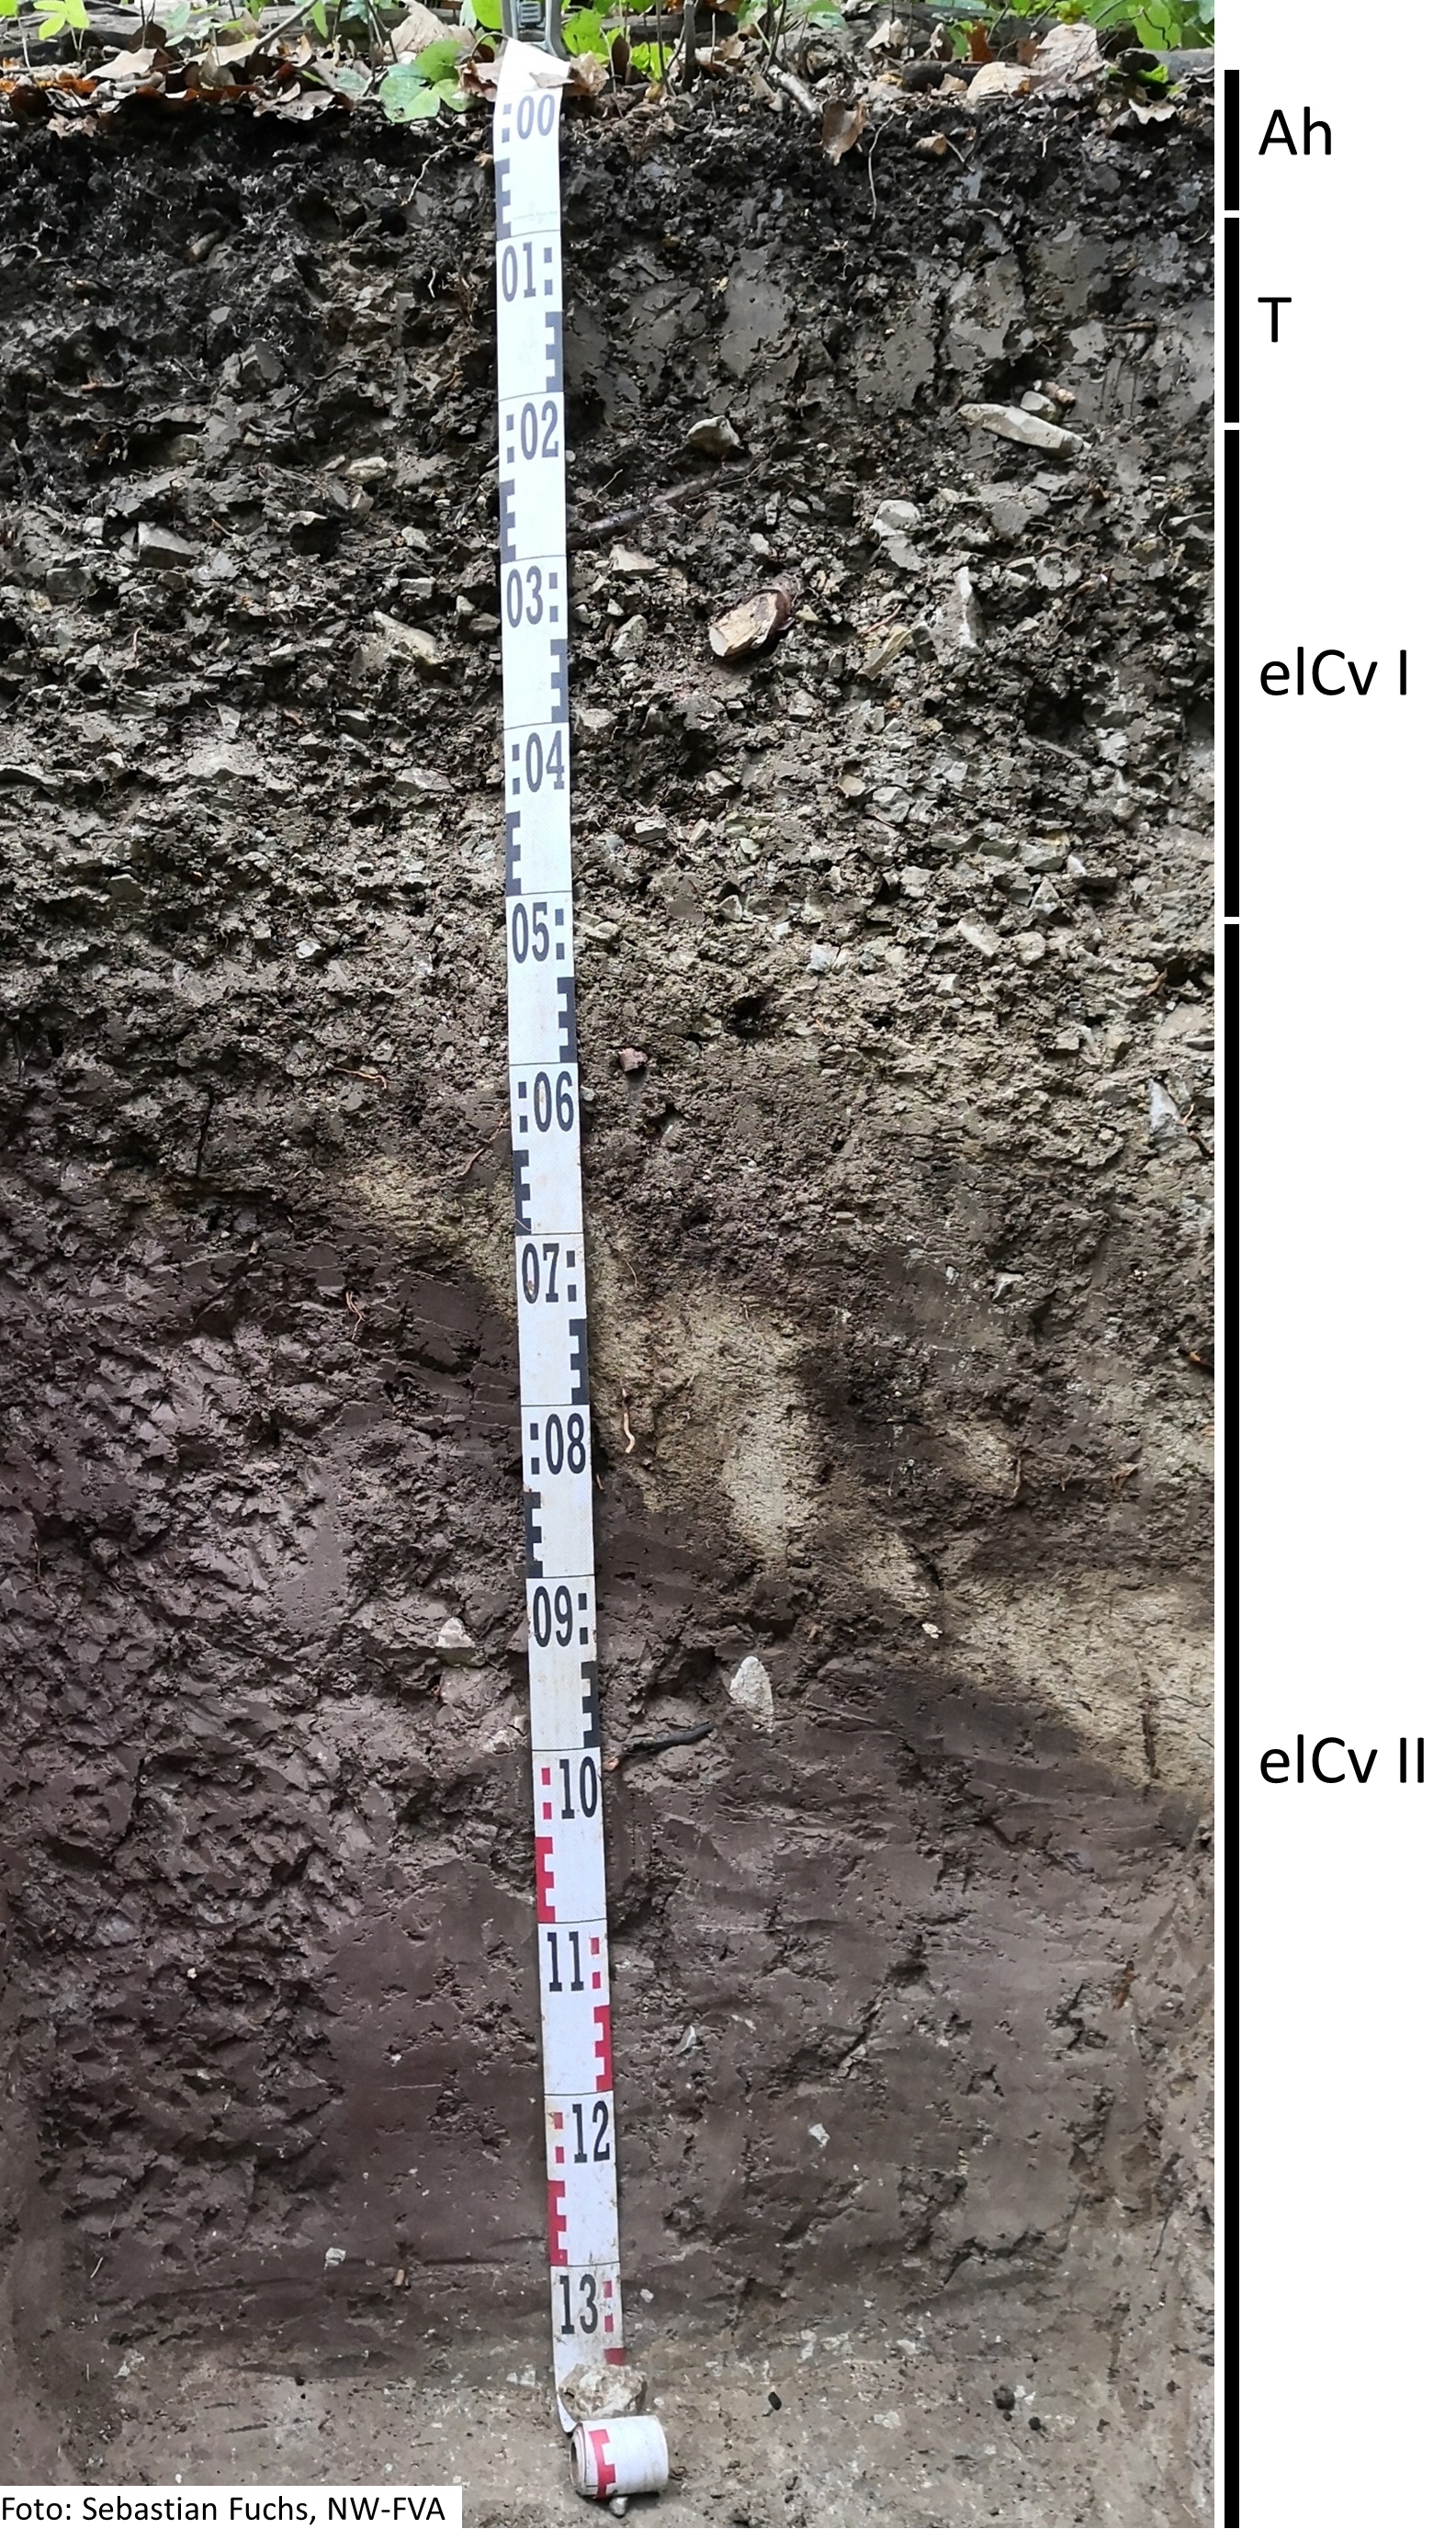 Das Foto zeigt einen senkrechten Schnitt durch den Boden der Untersuchungsfläche. Das Bodenprofil enthält folgende Bodenhorizonte: Ah,T, elCv I, elCv II